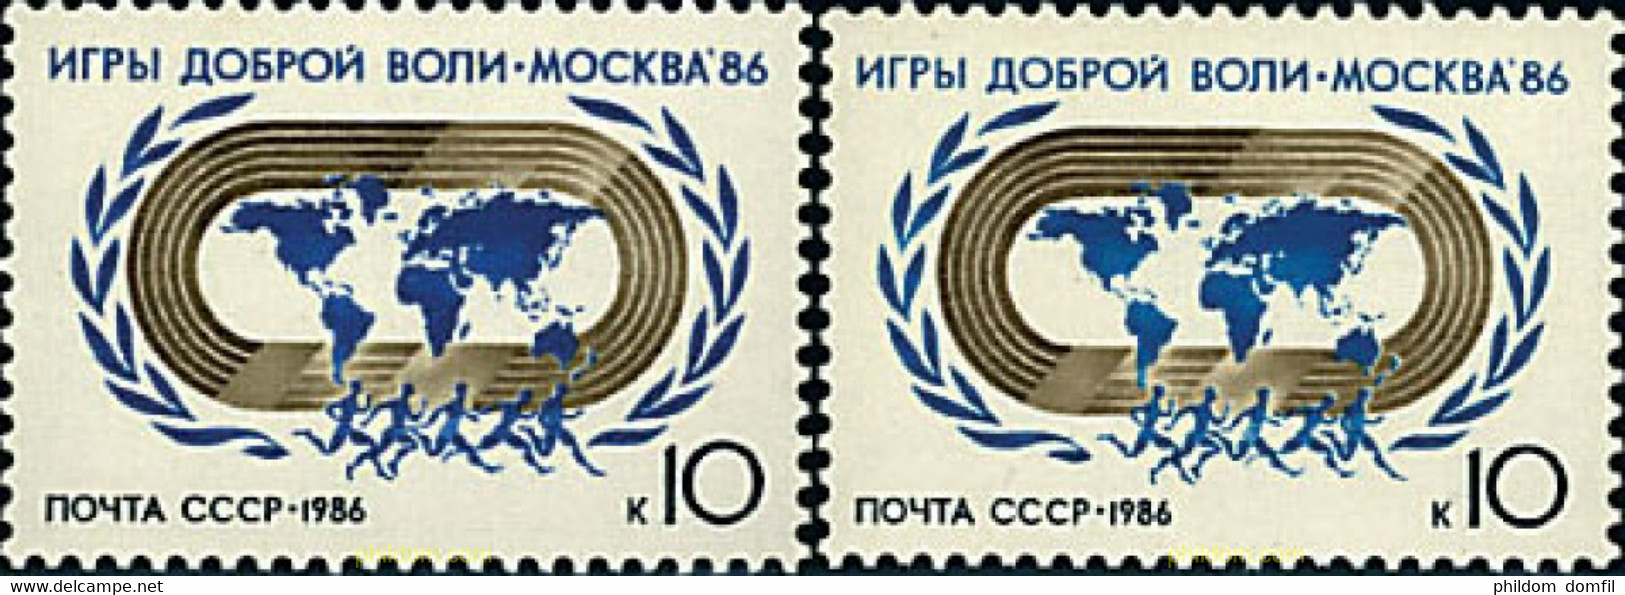 63501 MNH UNION SOVIETICA 1986 JUEGOS DEPORTIVOS INTERNACIONALES DE LA BUENA VOLUNTAD - Collezioni